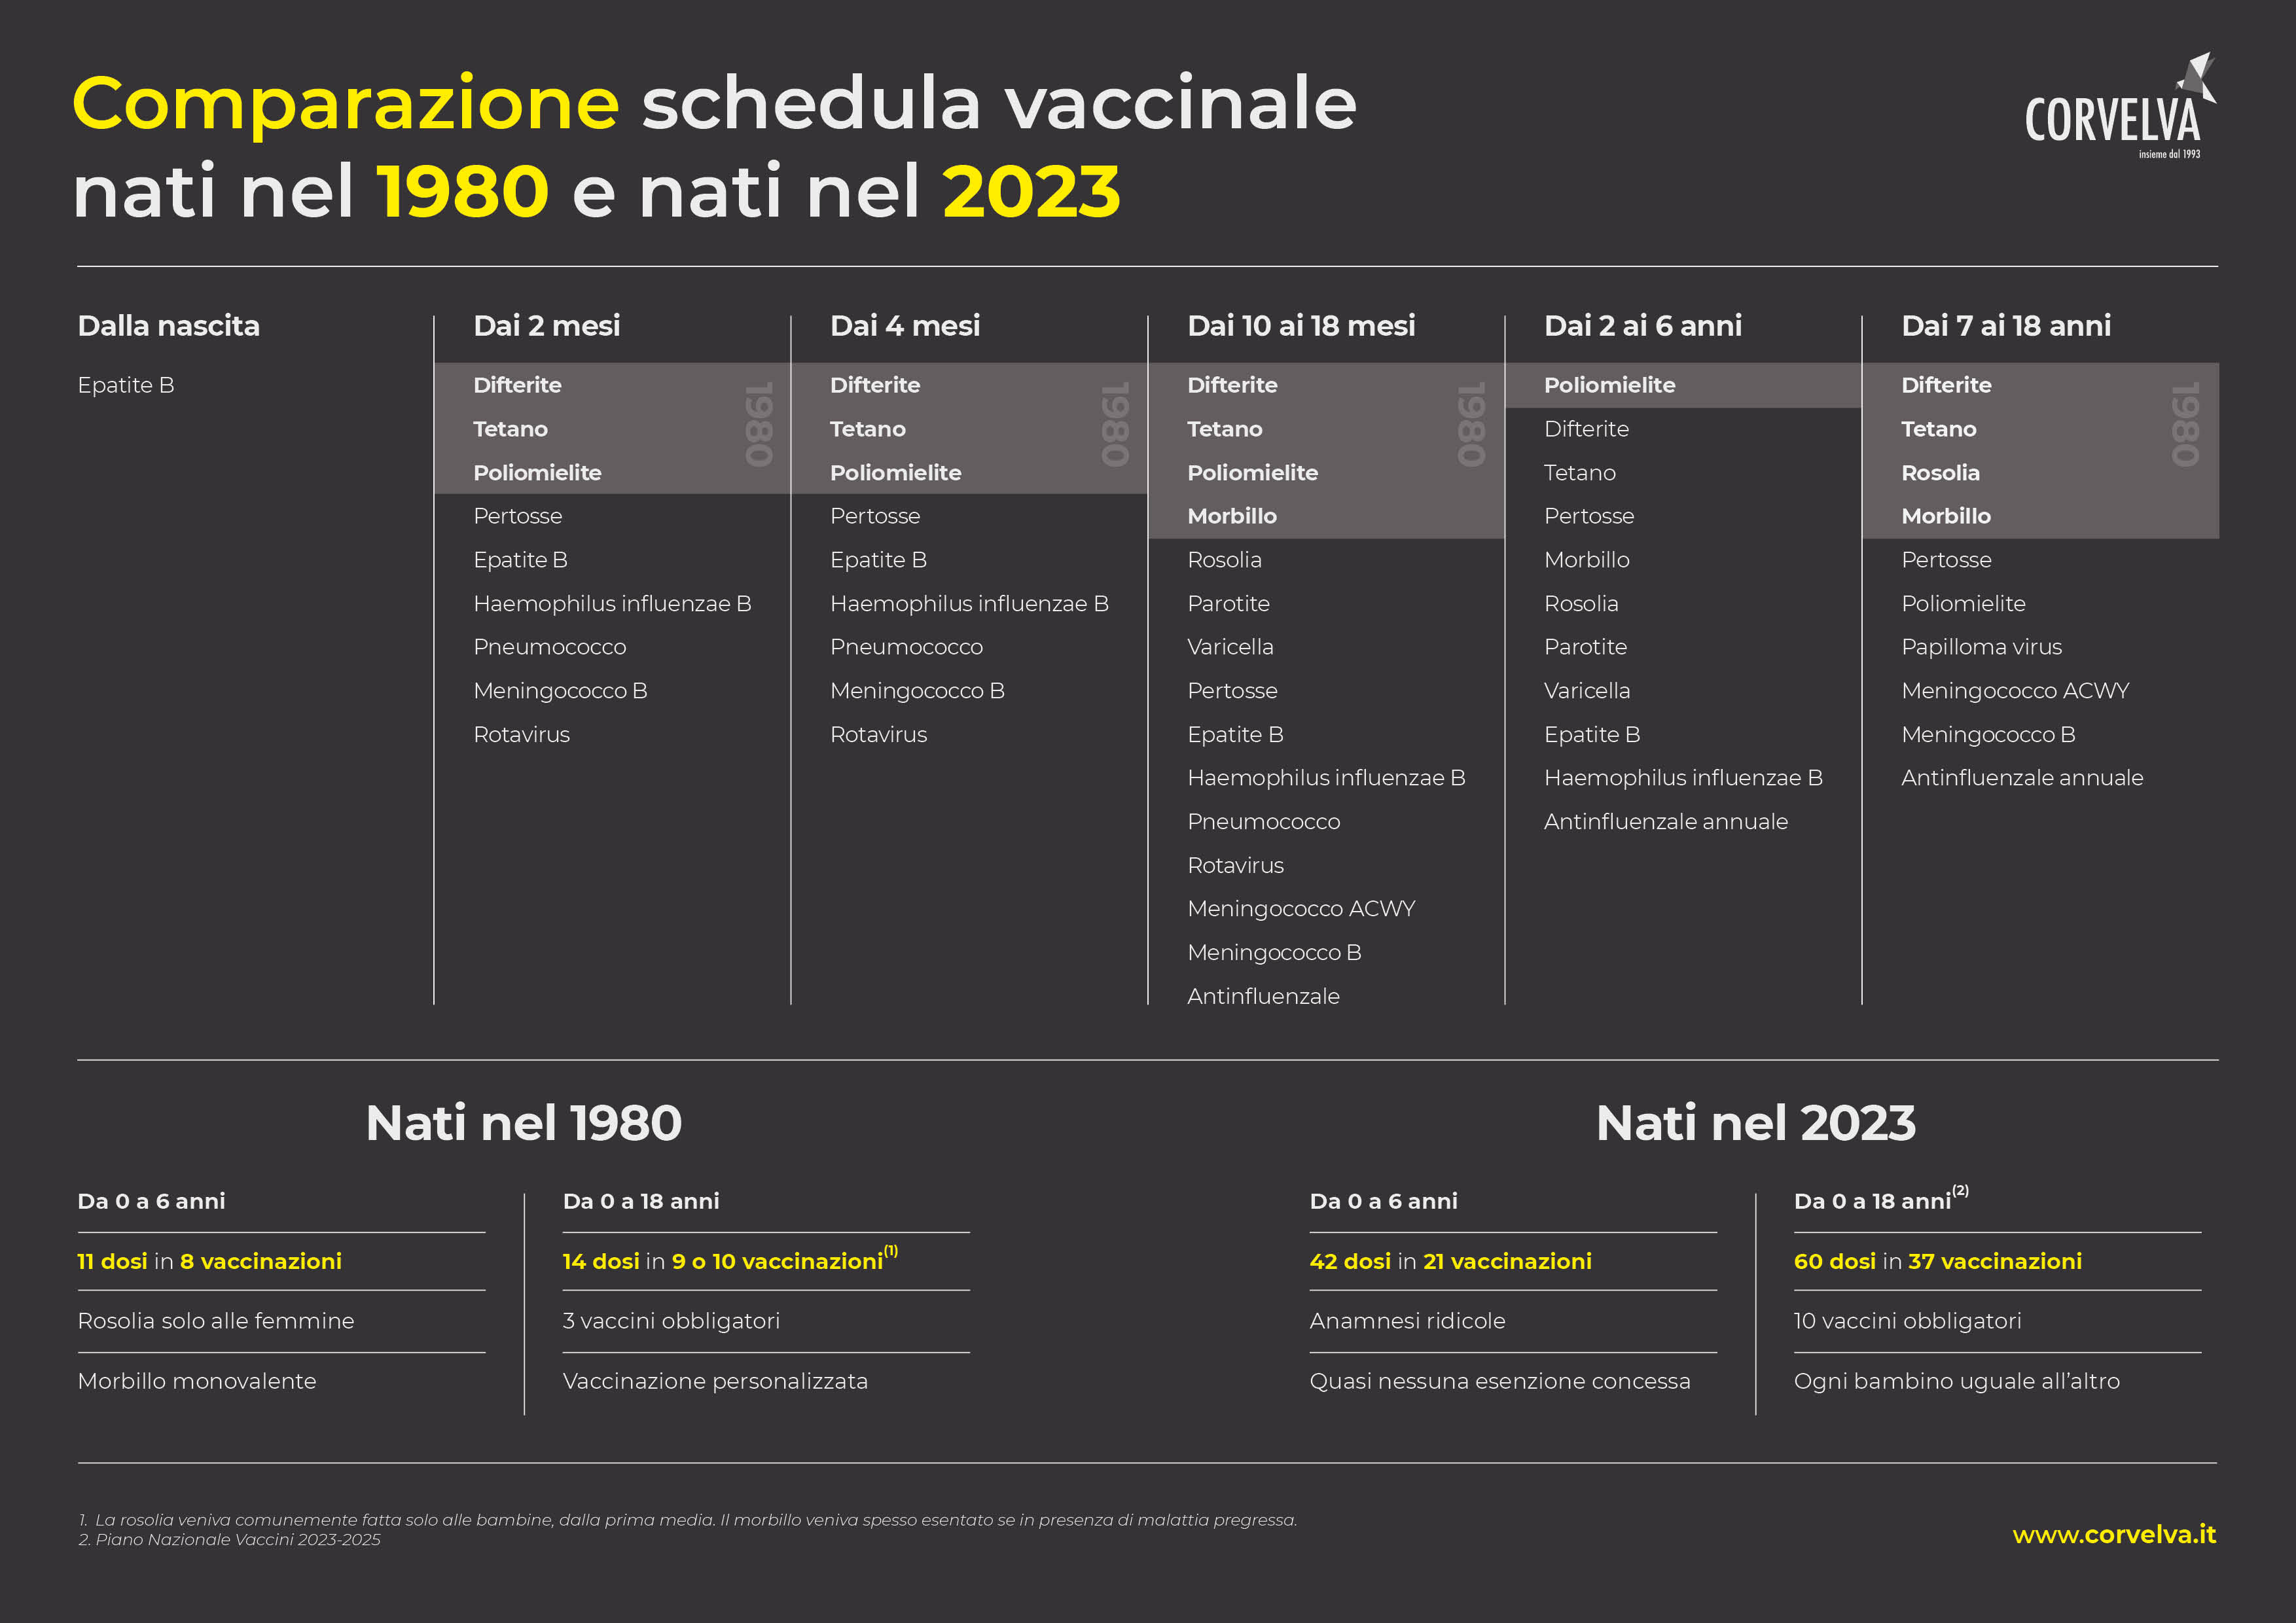 Сравнение календарей вакцинации рожденных в 1980 и 2023 гг.